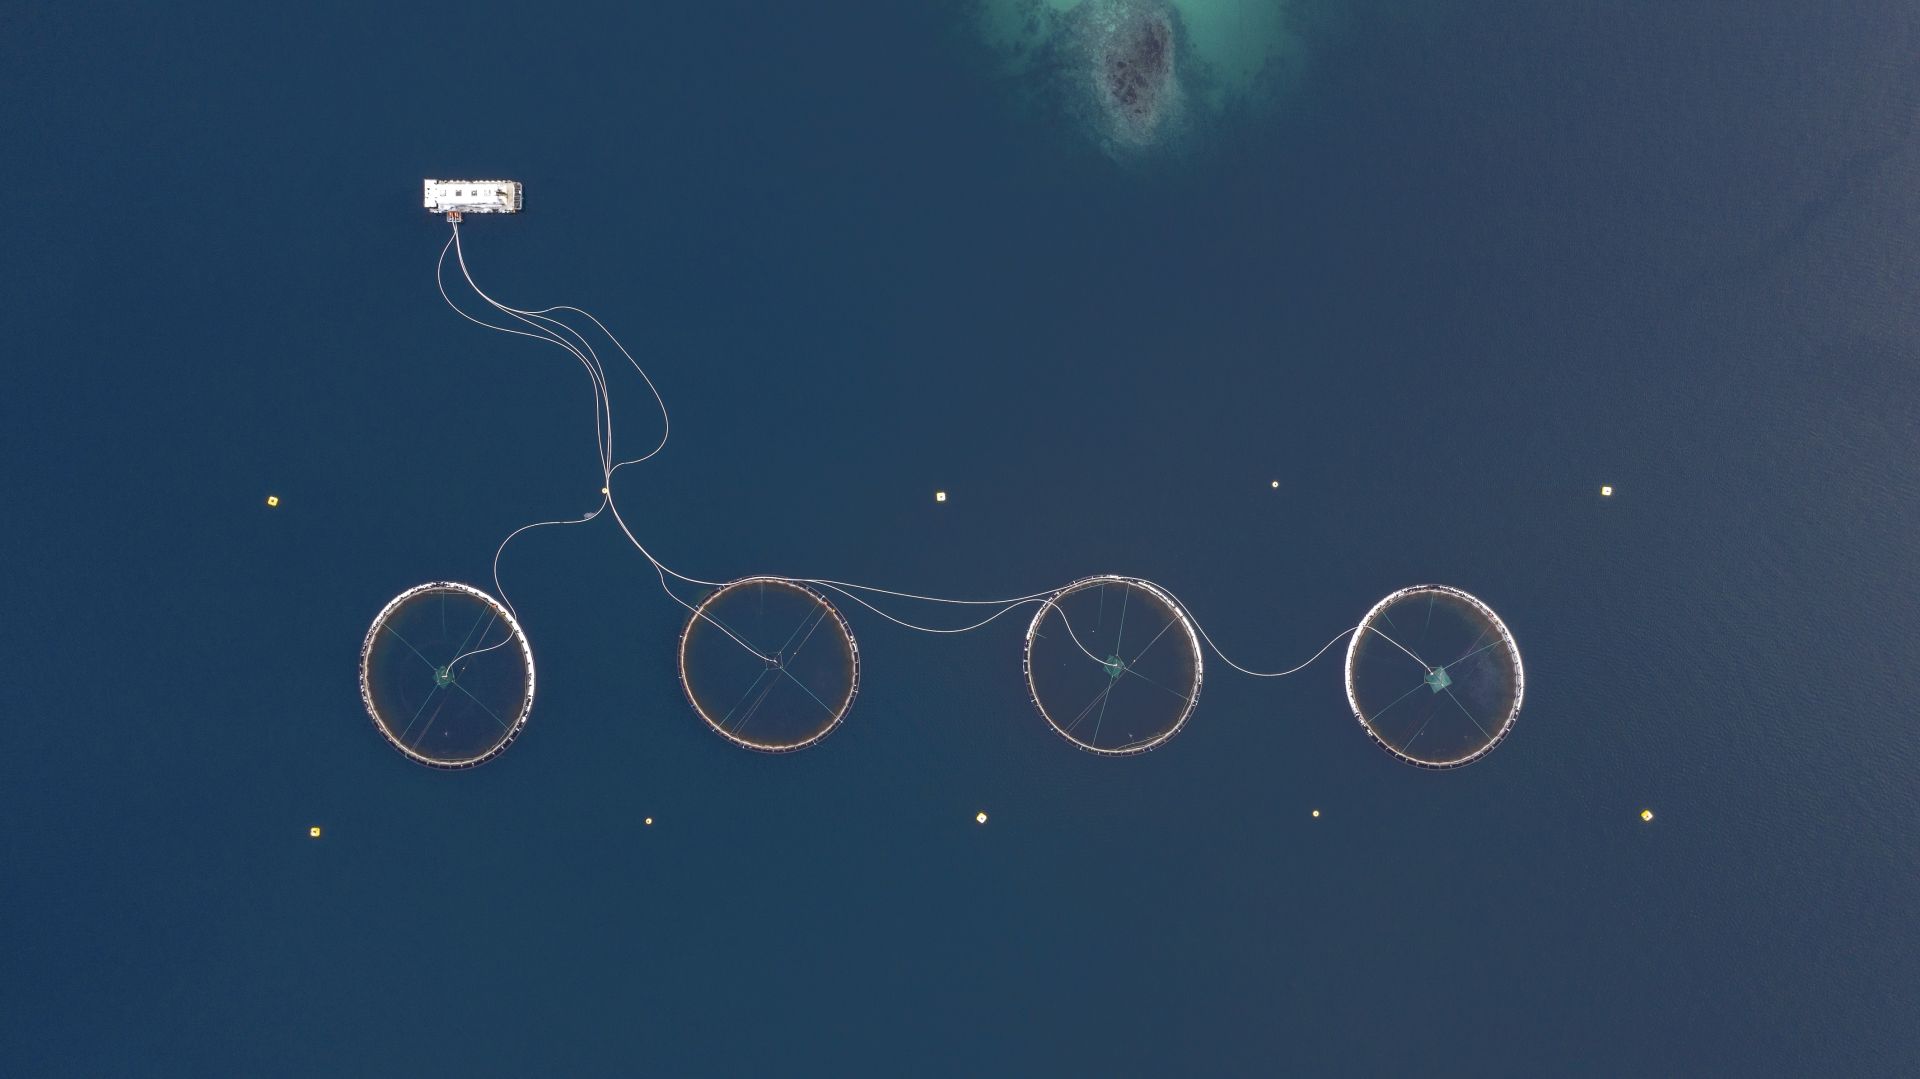 Fotó: Rácz Péter: Űrlény négykerekű biciklivel<br />Norvégia 1960-ban elsőként hozott létre halgazdaságokat, ahol úszó ketrecekben tenyésztett lazacokat. Ma már számos ilyen haltelep található a fjordokban. Ezekkel a telepekkel próbálják kielégíteni folyamatosan a növekvő igényeket. A Föld teljes lazactermelésének 2/3-át ilyen akvakultúrák adják.<br /><br />Kezünkben a Föld<br />1. díj<br />